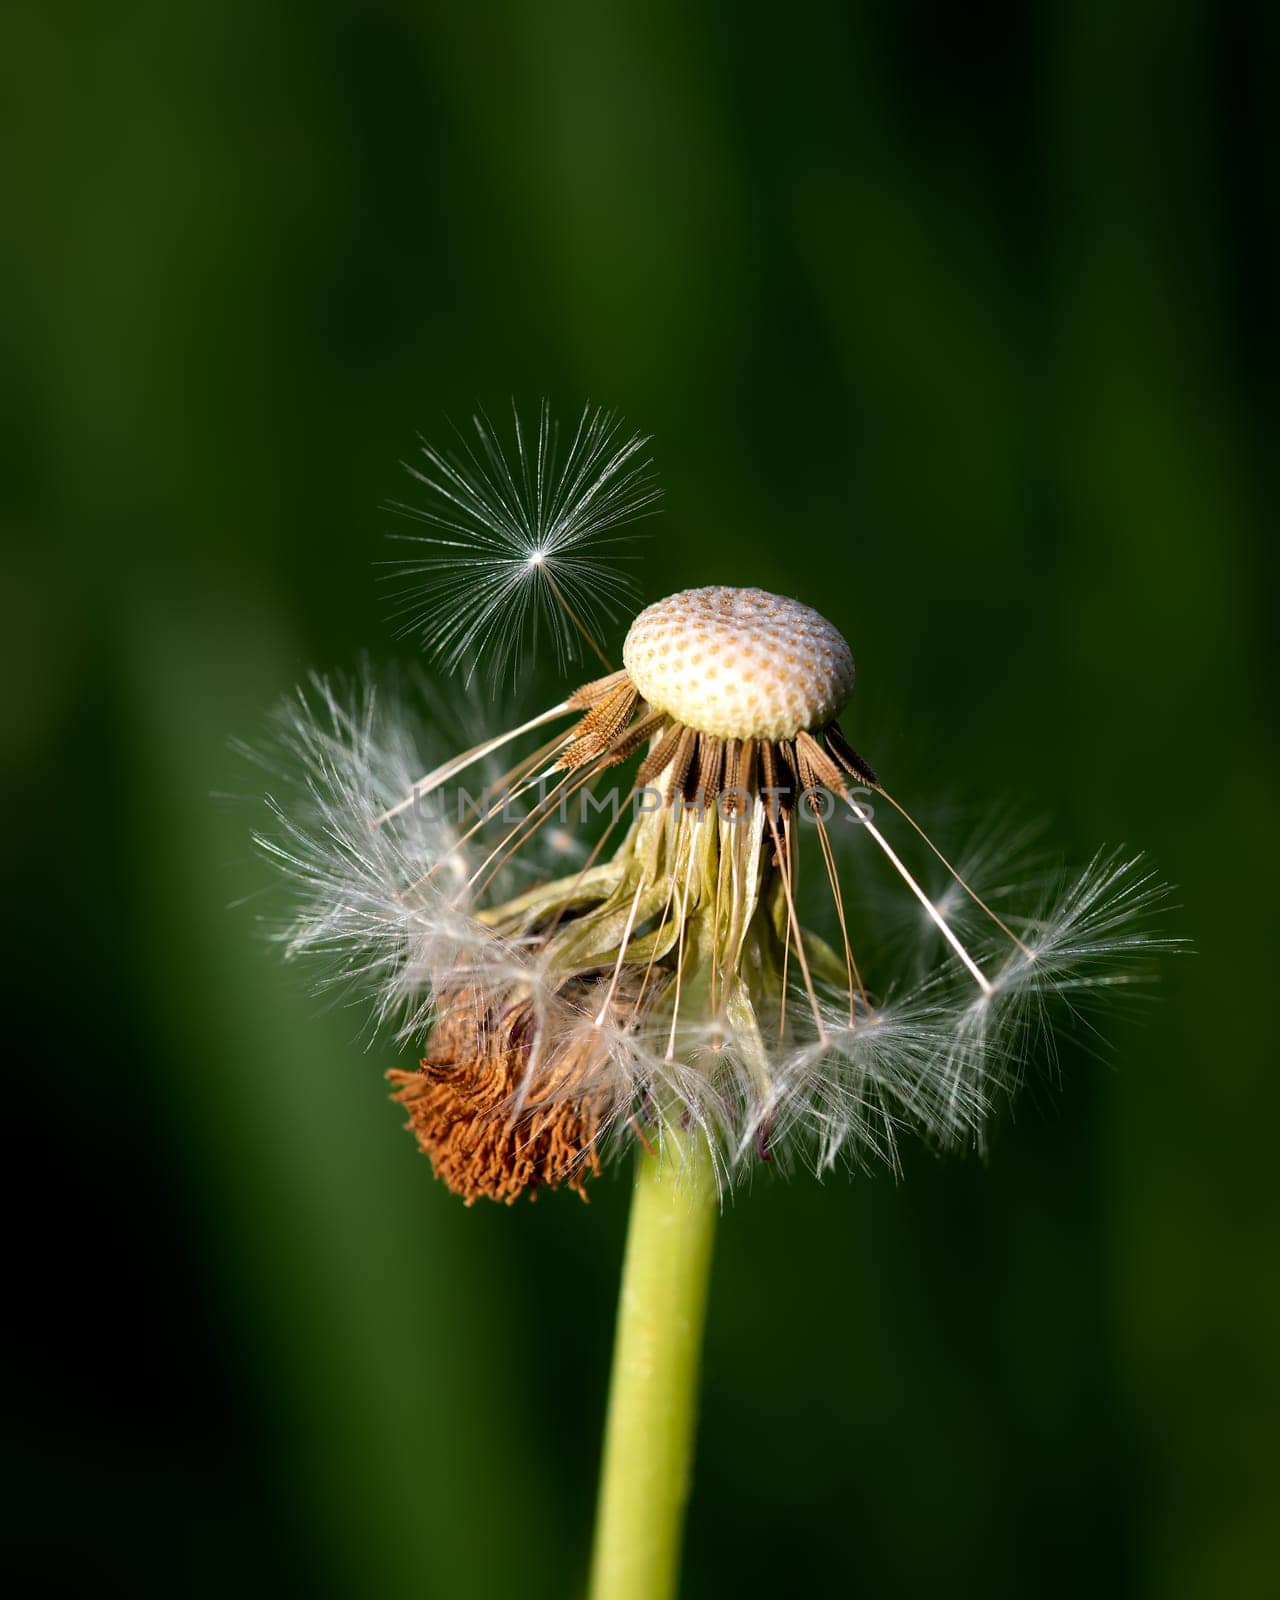 Spring image of dandelion on green blurred background, detailed image of dandelion